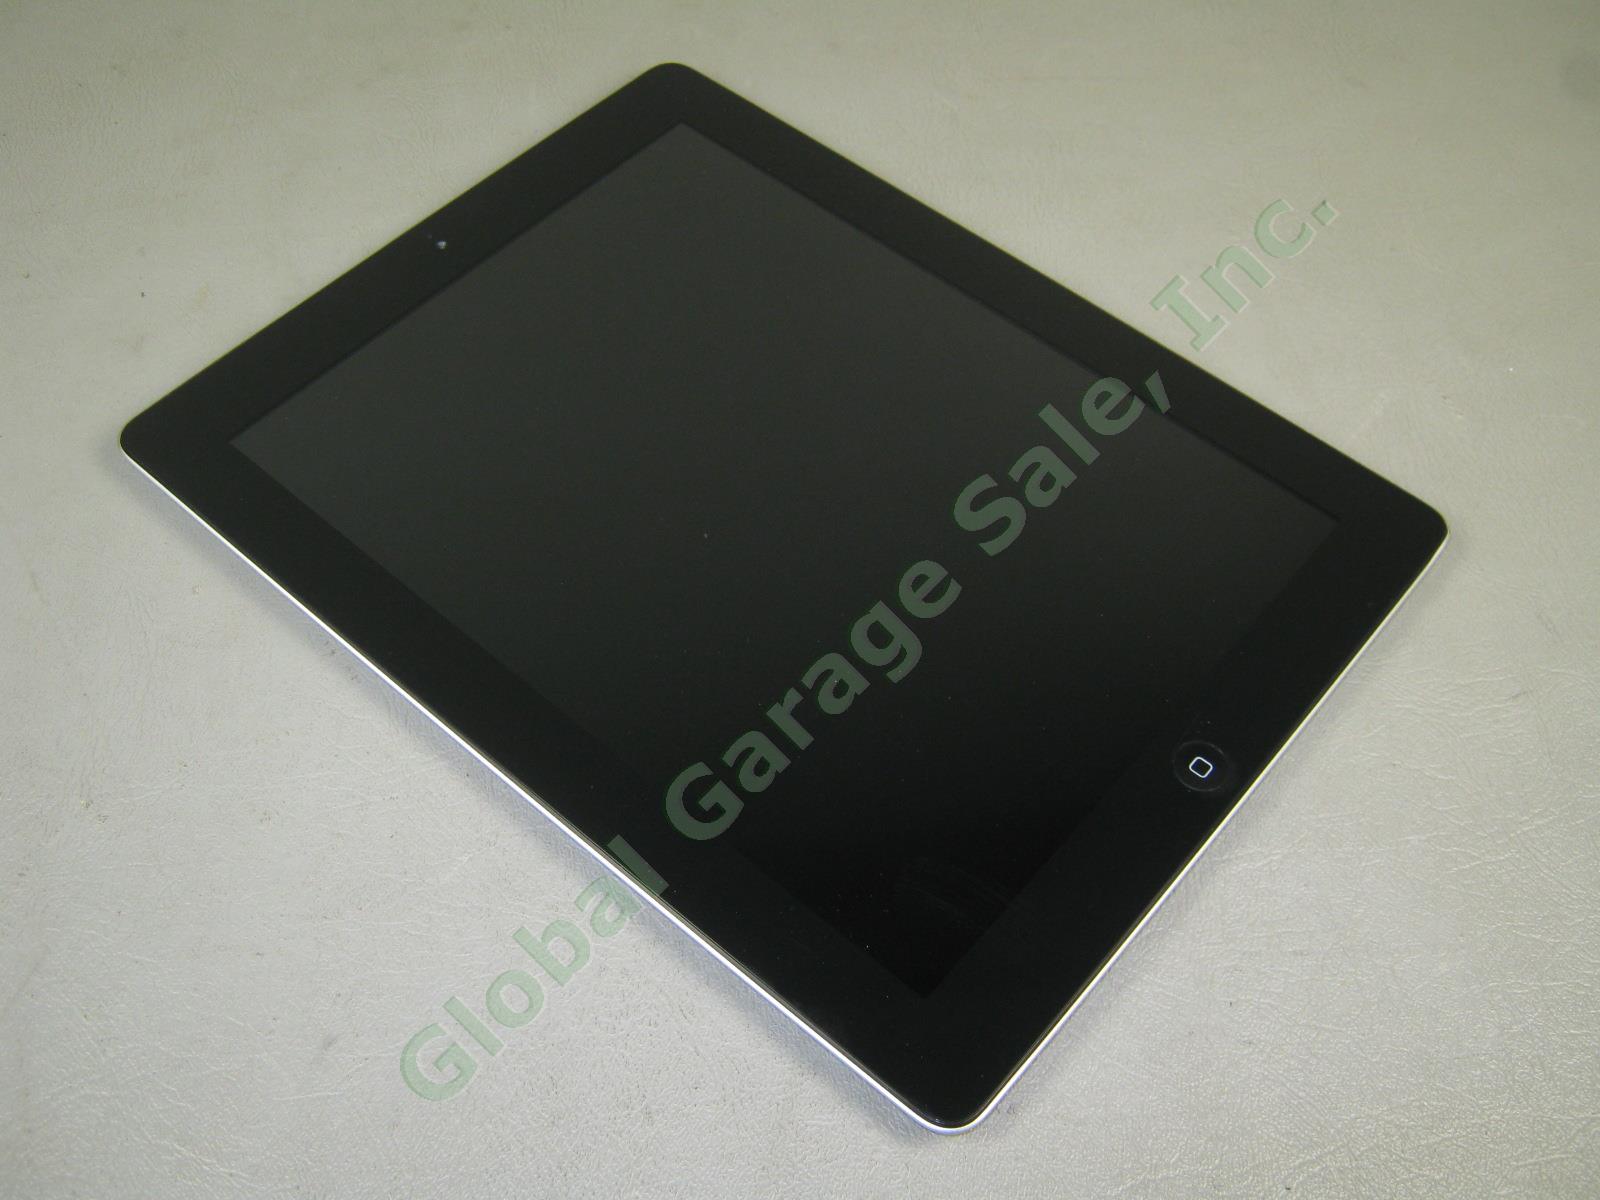 Apple iPad 2 Wifi 32GB Black Tablet MC770LL/A A1395 Factory Reset No Reserve! 4